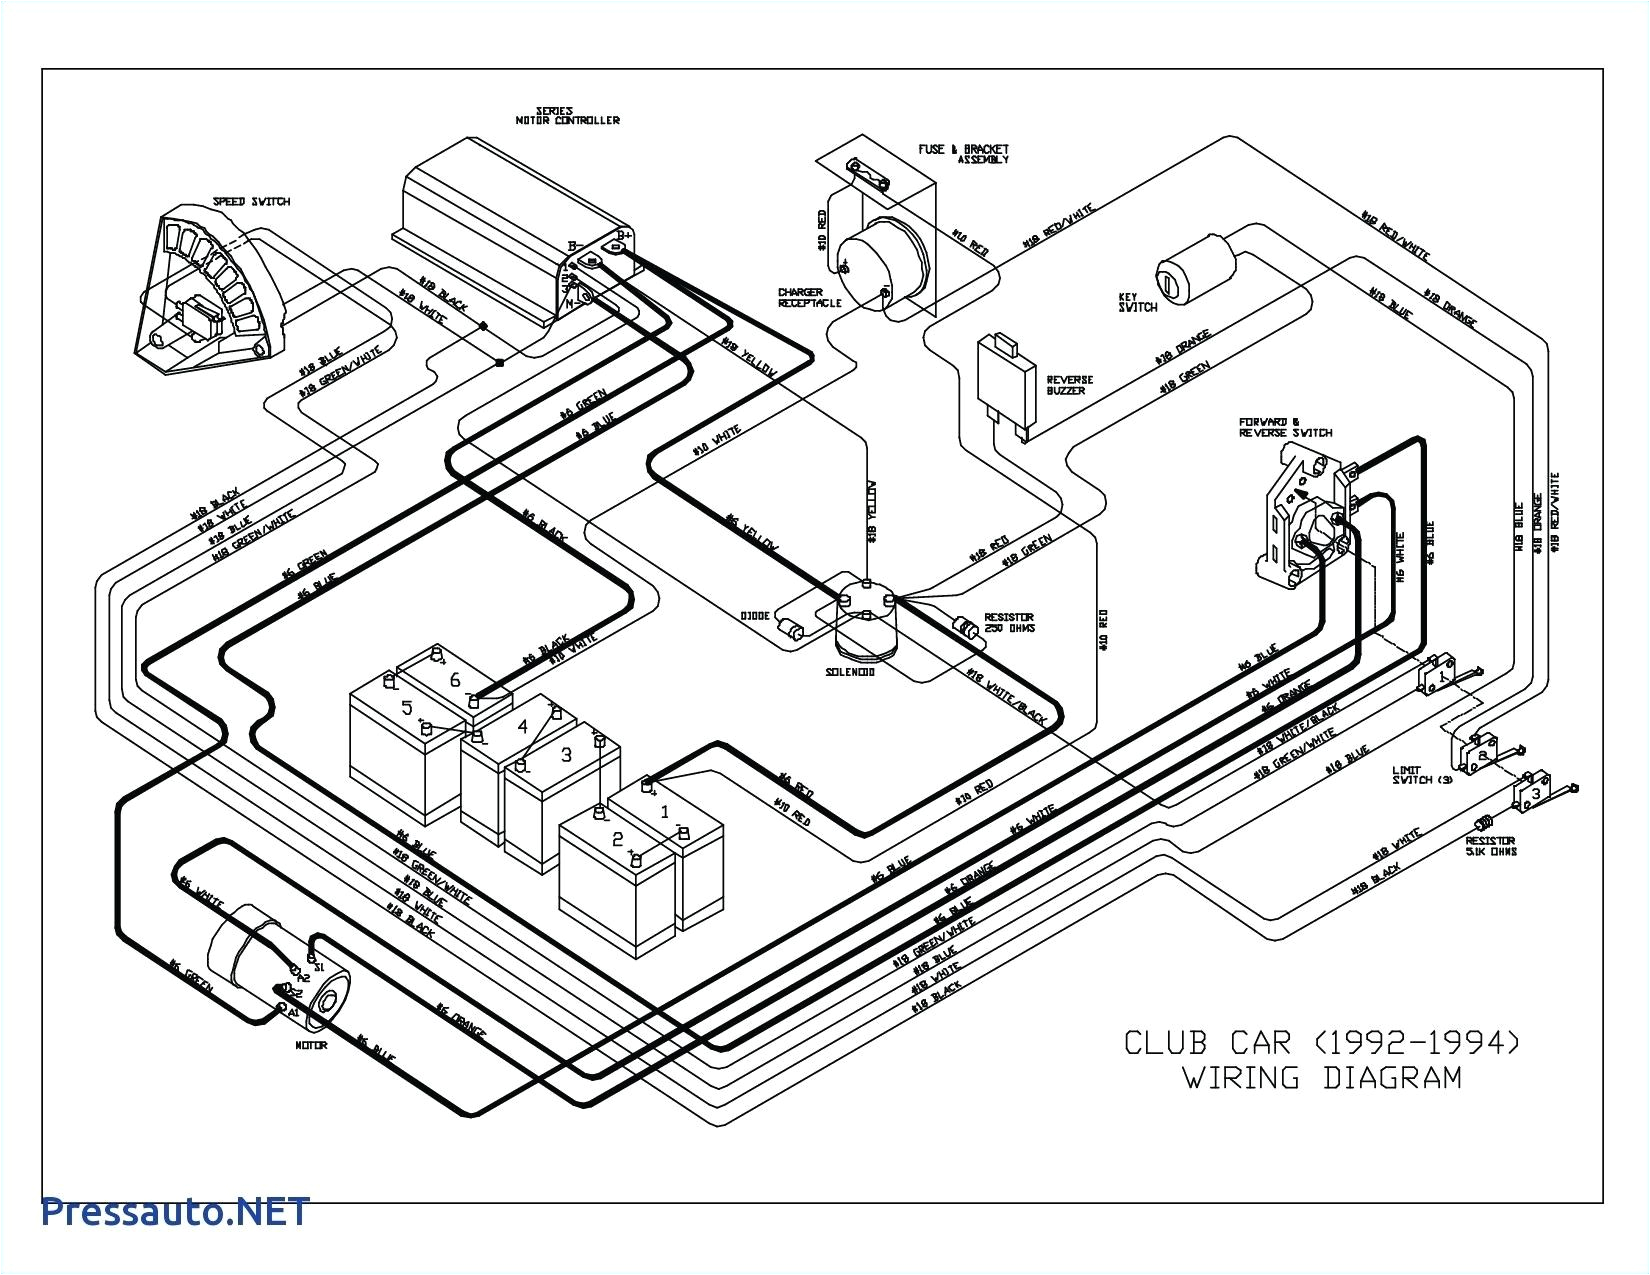 headlight 1999 club car schematic diagram wiring diagram post 1999 club car headlight wiring diagram wiring